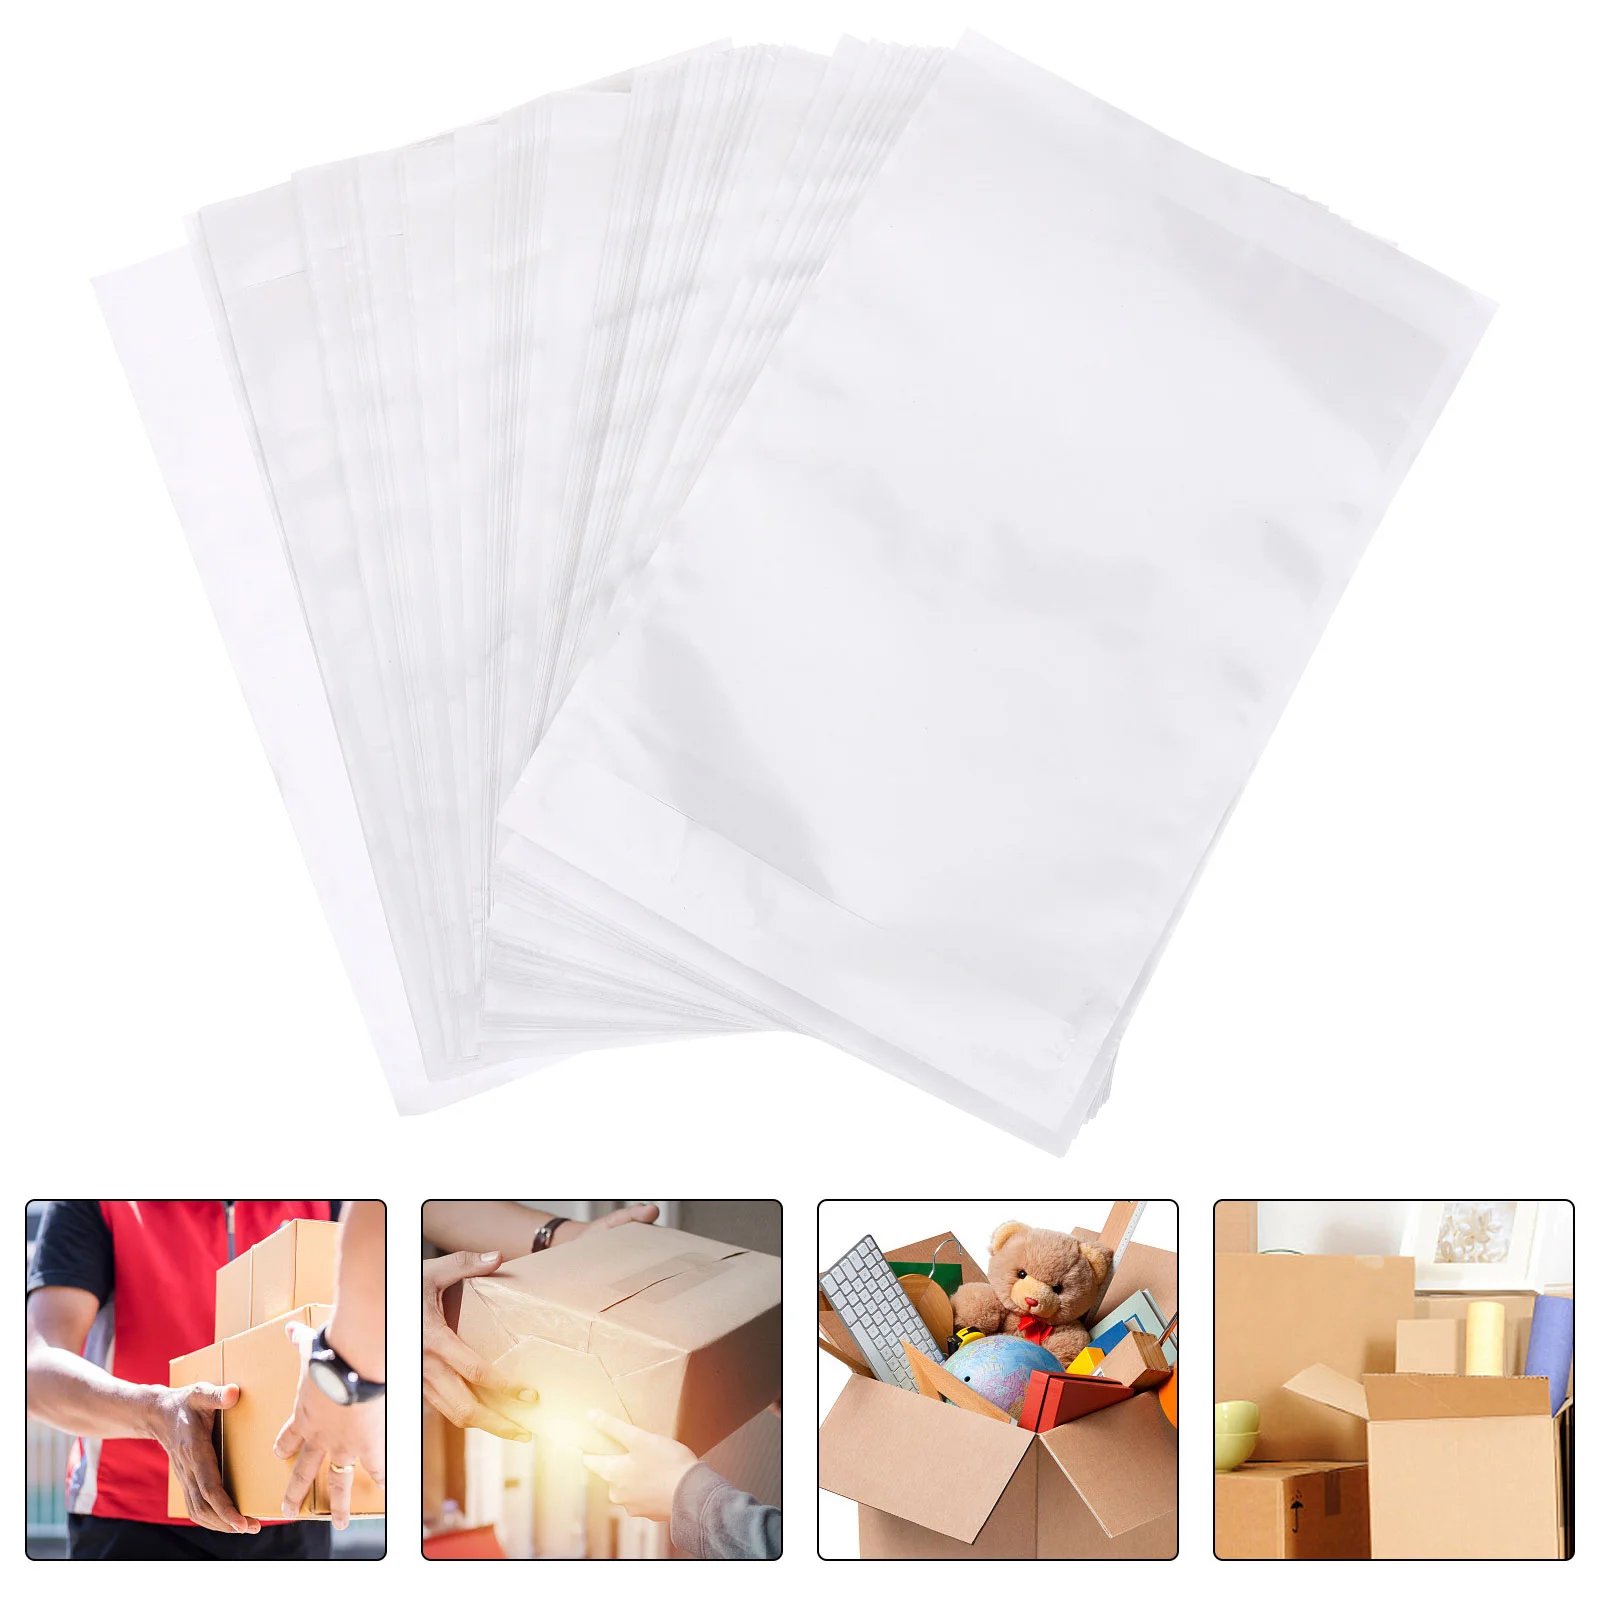 

100 шт. наборы этикеток для доставки, упаковочный лист, конверты, маленькие прозрачные конверты или клейкие рукава